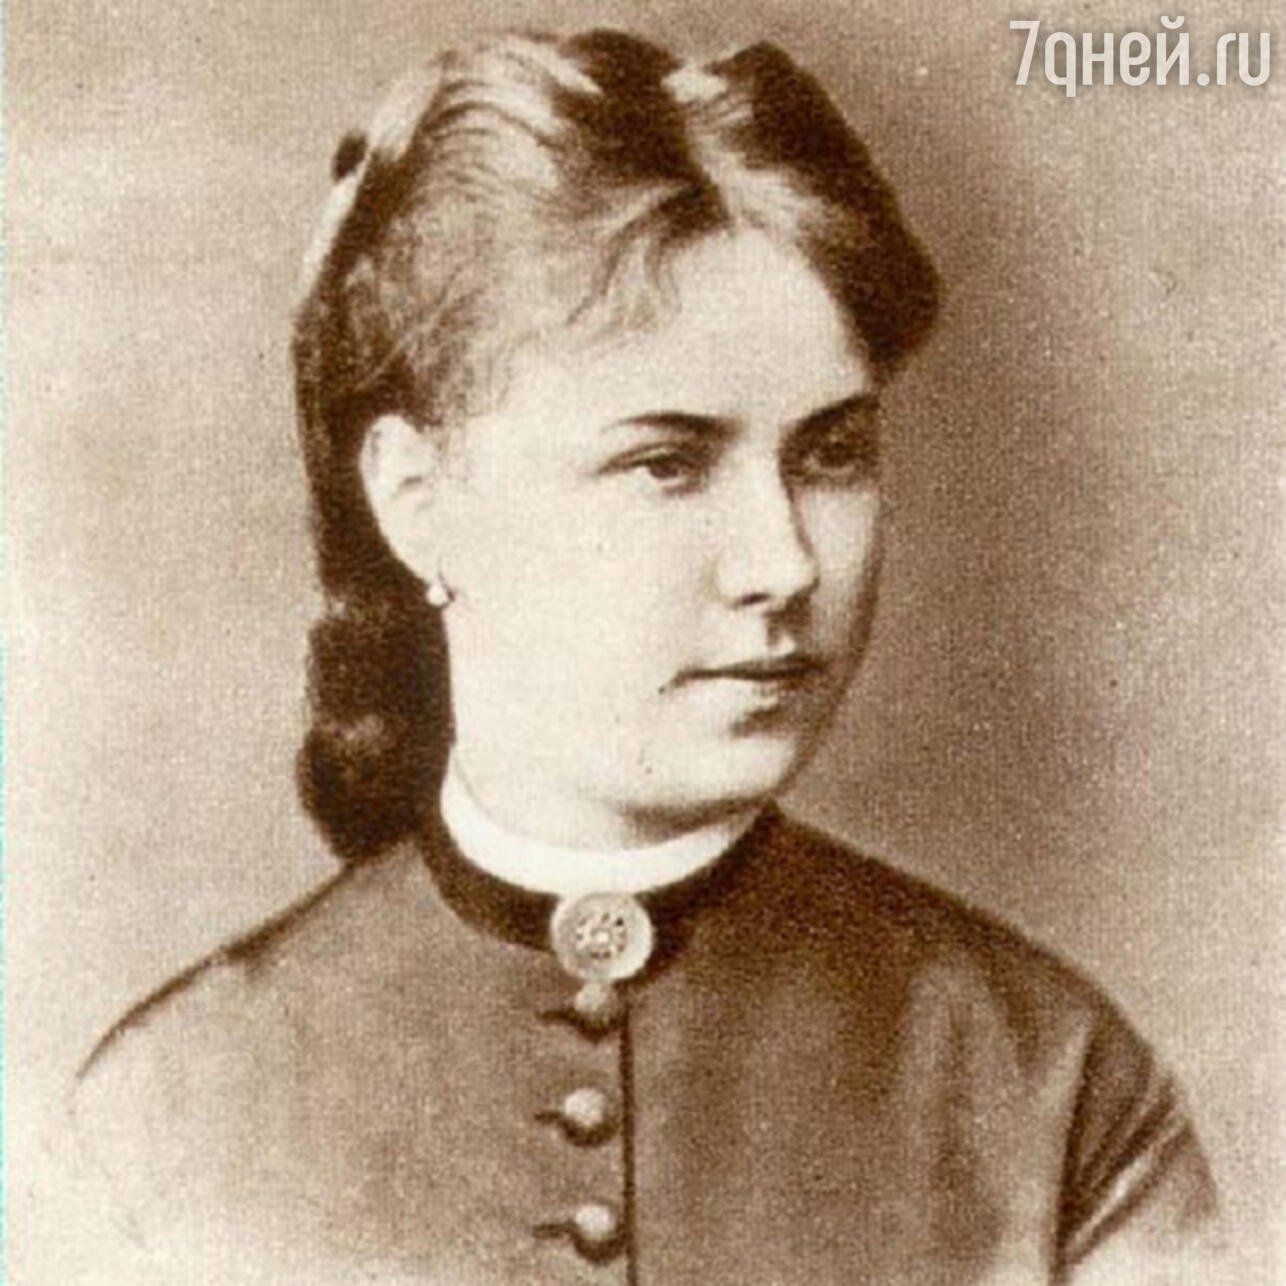 Зинаида Николаевна Некрасова